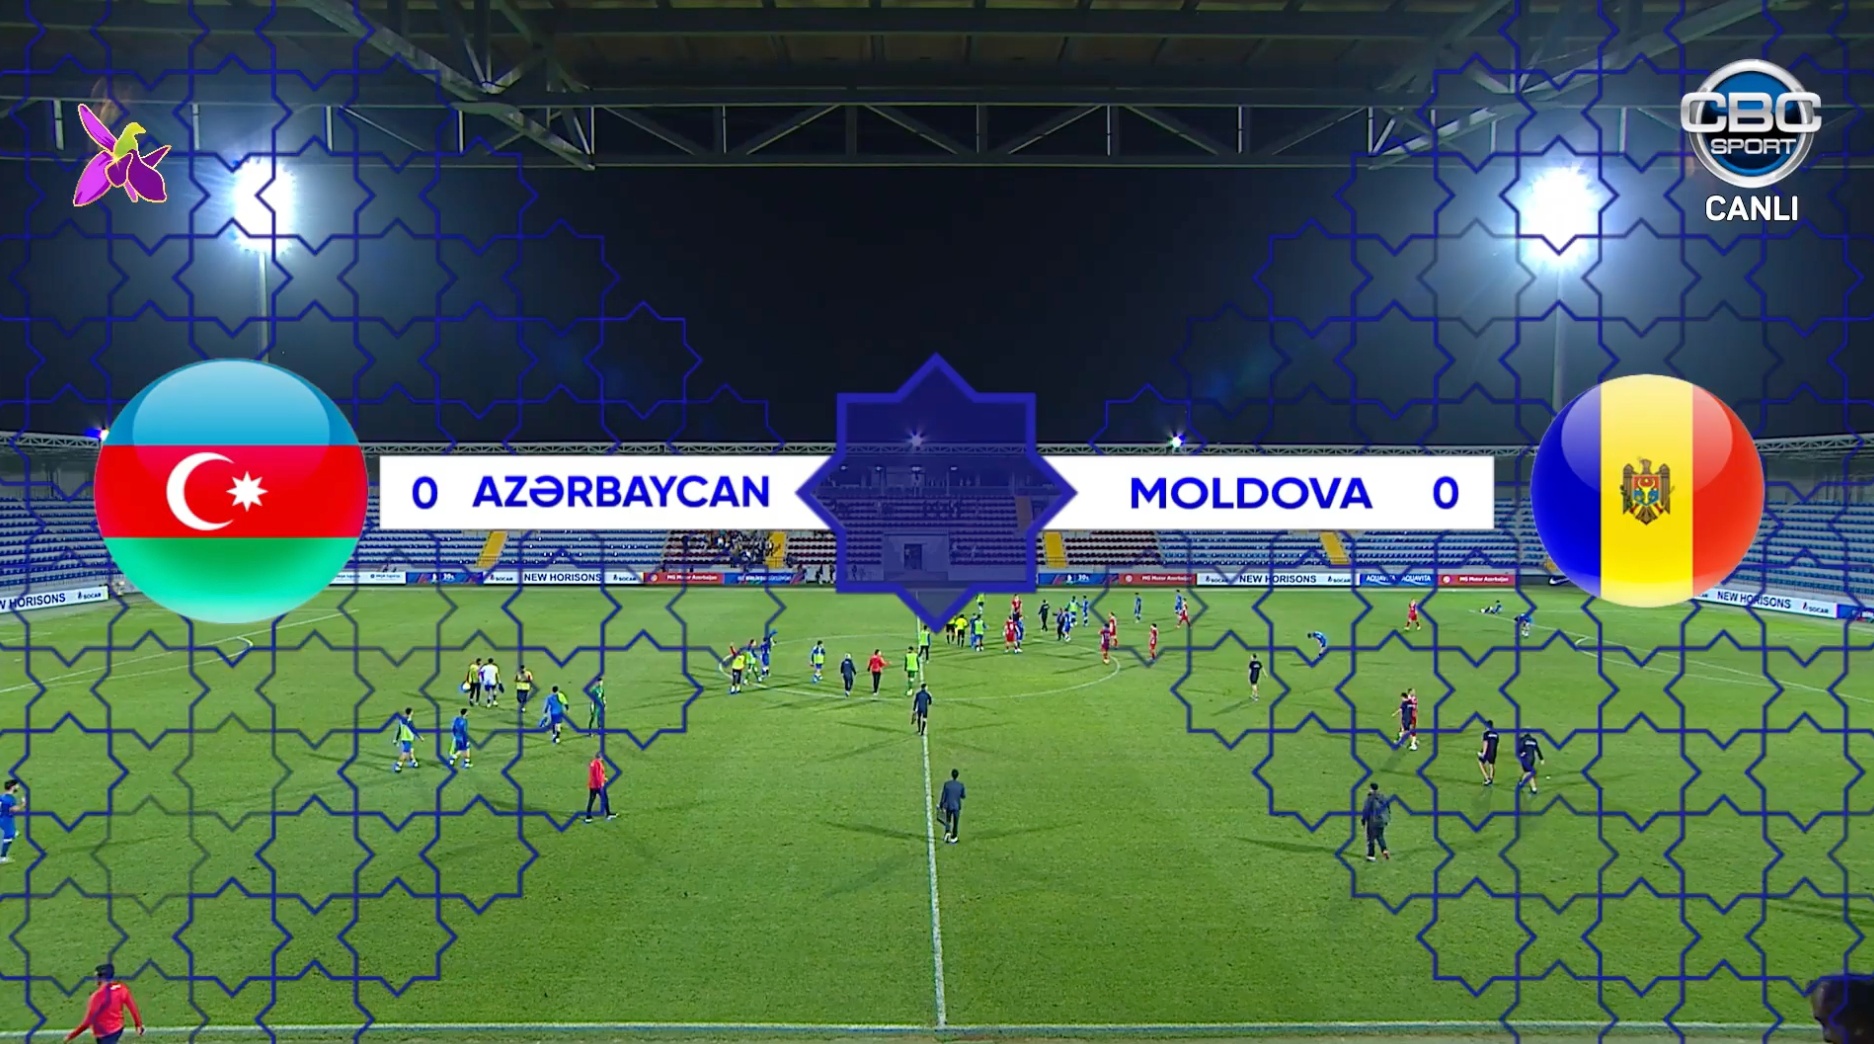 Свс азербайджан прямой эфир футбол. Товарищеский матч по футболу. Сегодняшние матчи по футболу. Tvc21 Moldova.